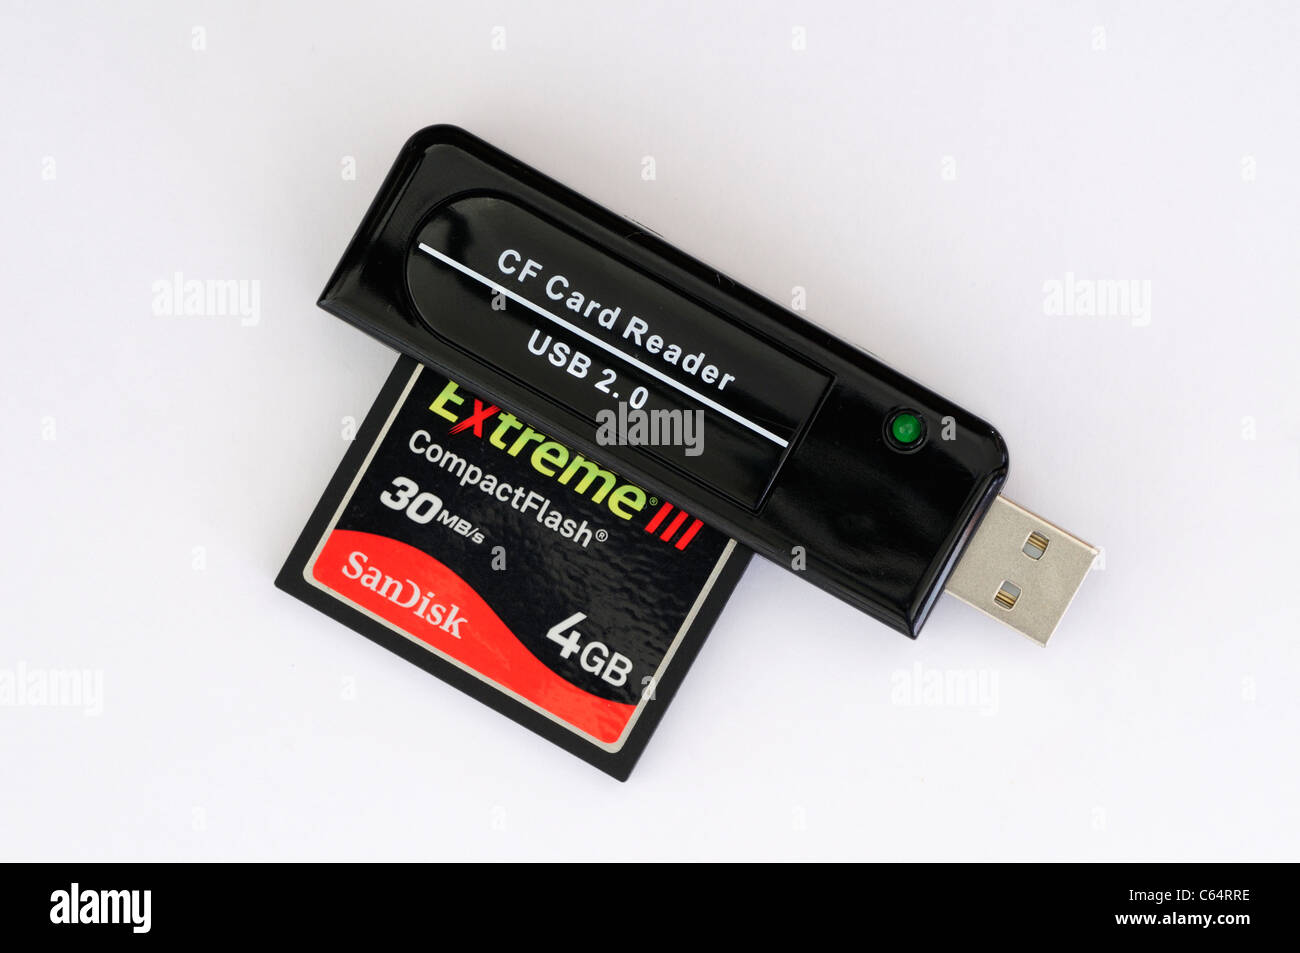 Carte mémoire Compact Flash CF Lecteur Sandisk Extreme III 4Go Carte  Mémoire Photo Stock - Alamy